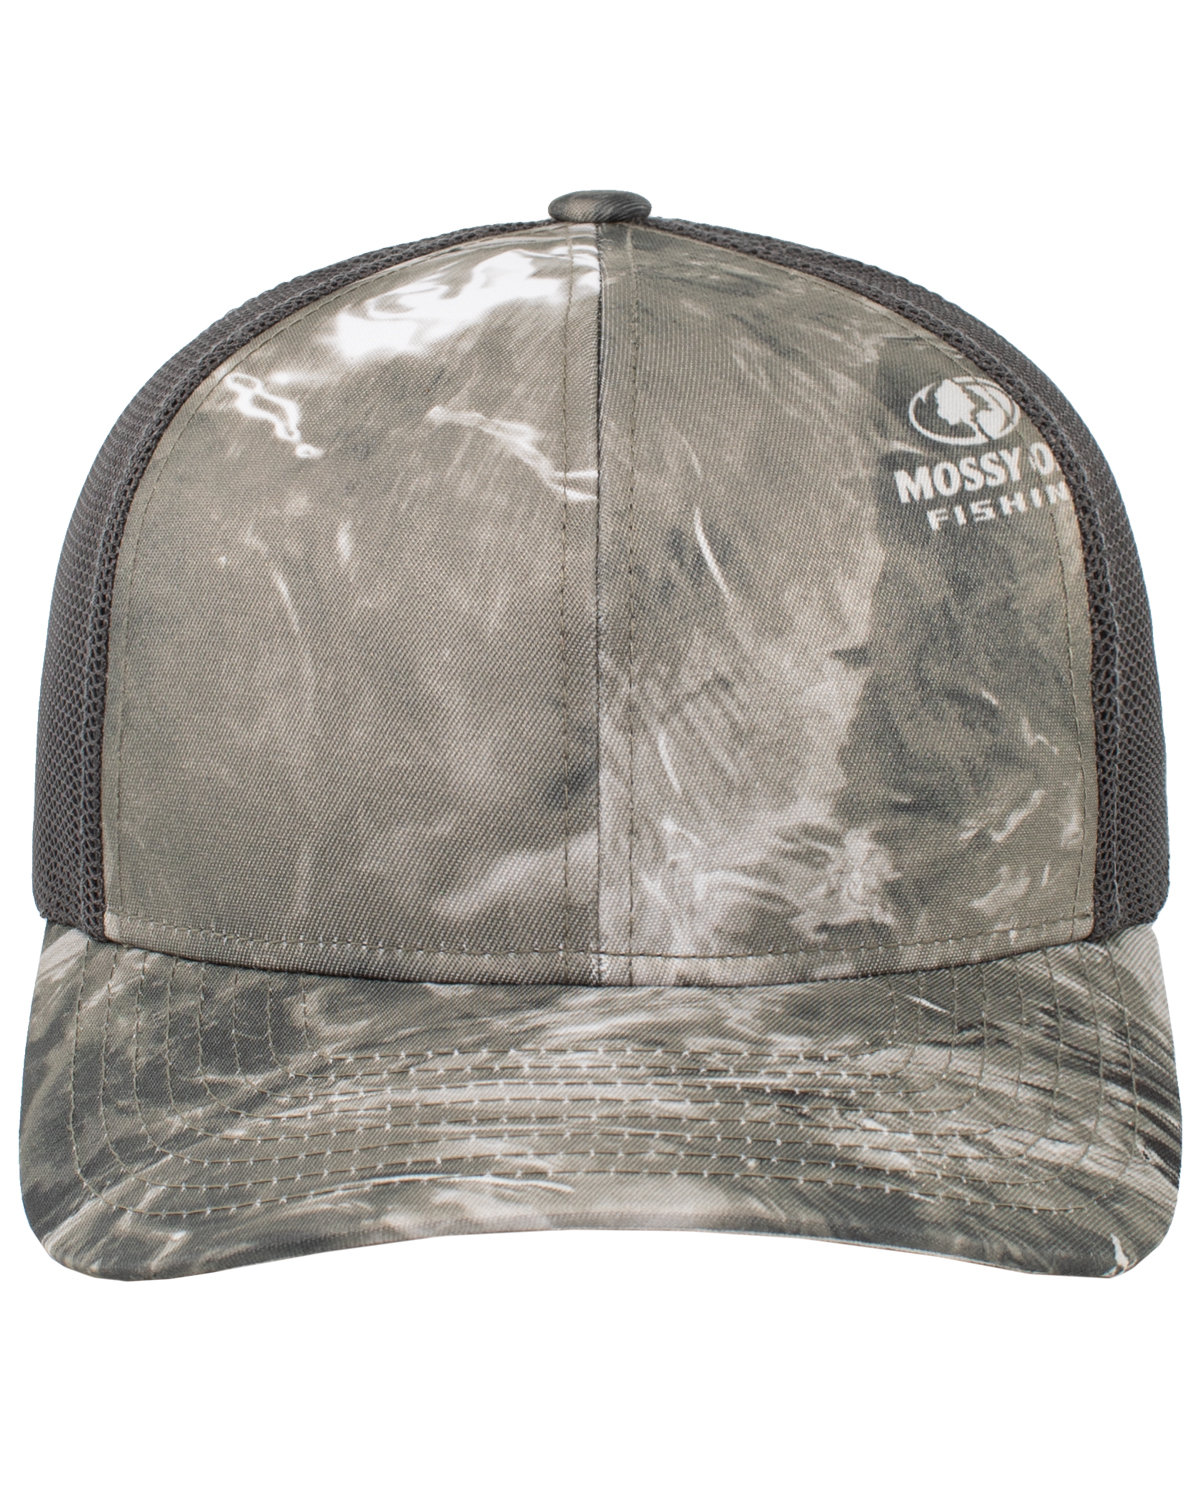 Pacific Headwear Snapback Trucker Hat GALT/ LT CHARCL 